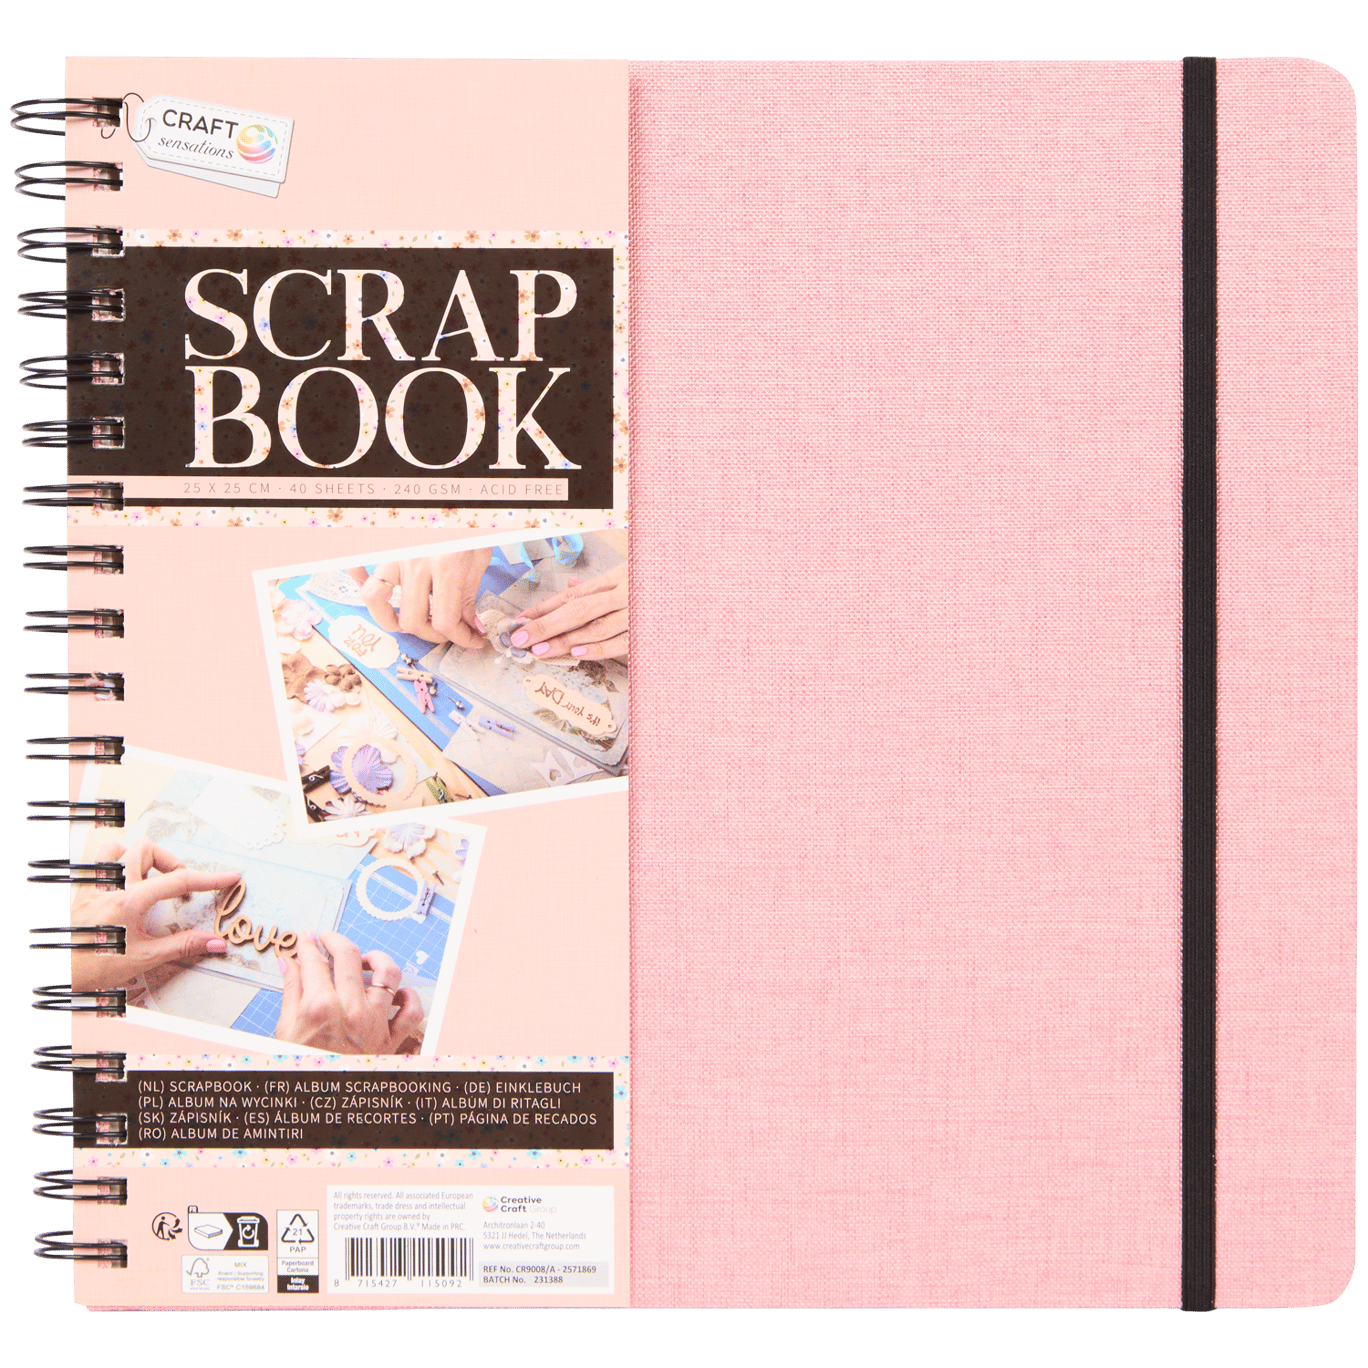 Scrap book Craft Sensations